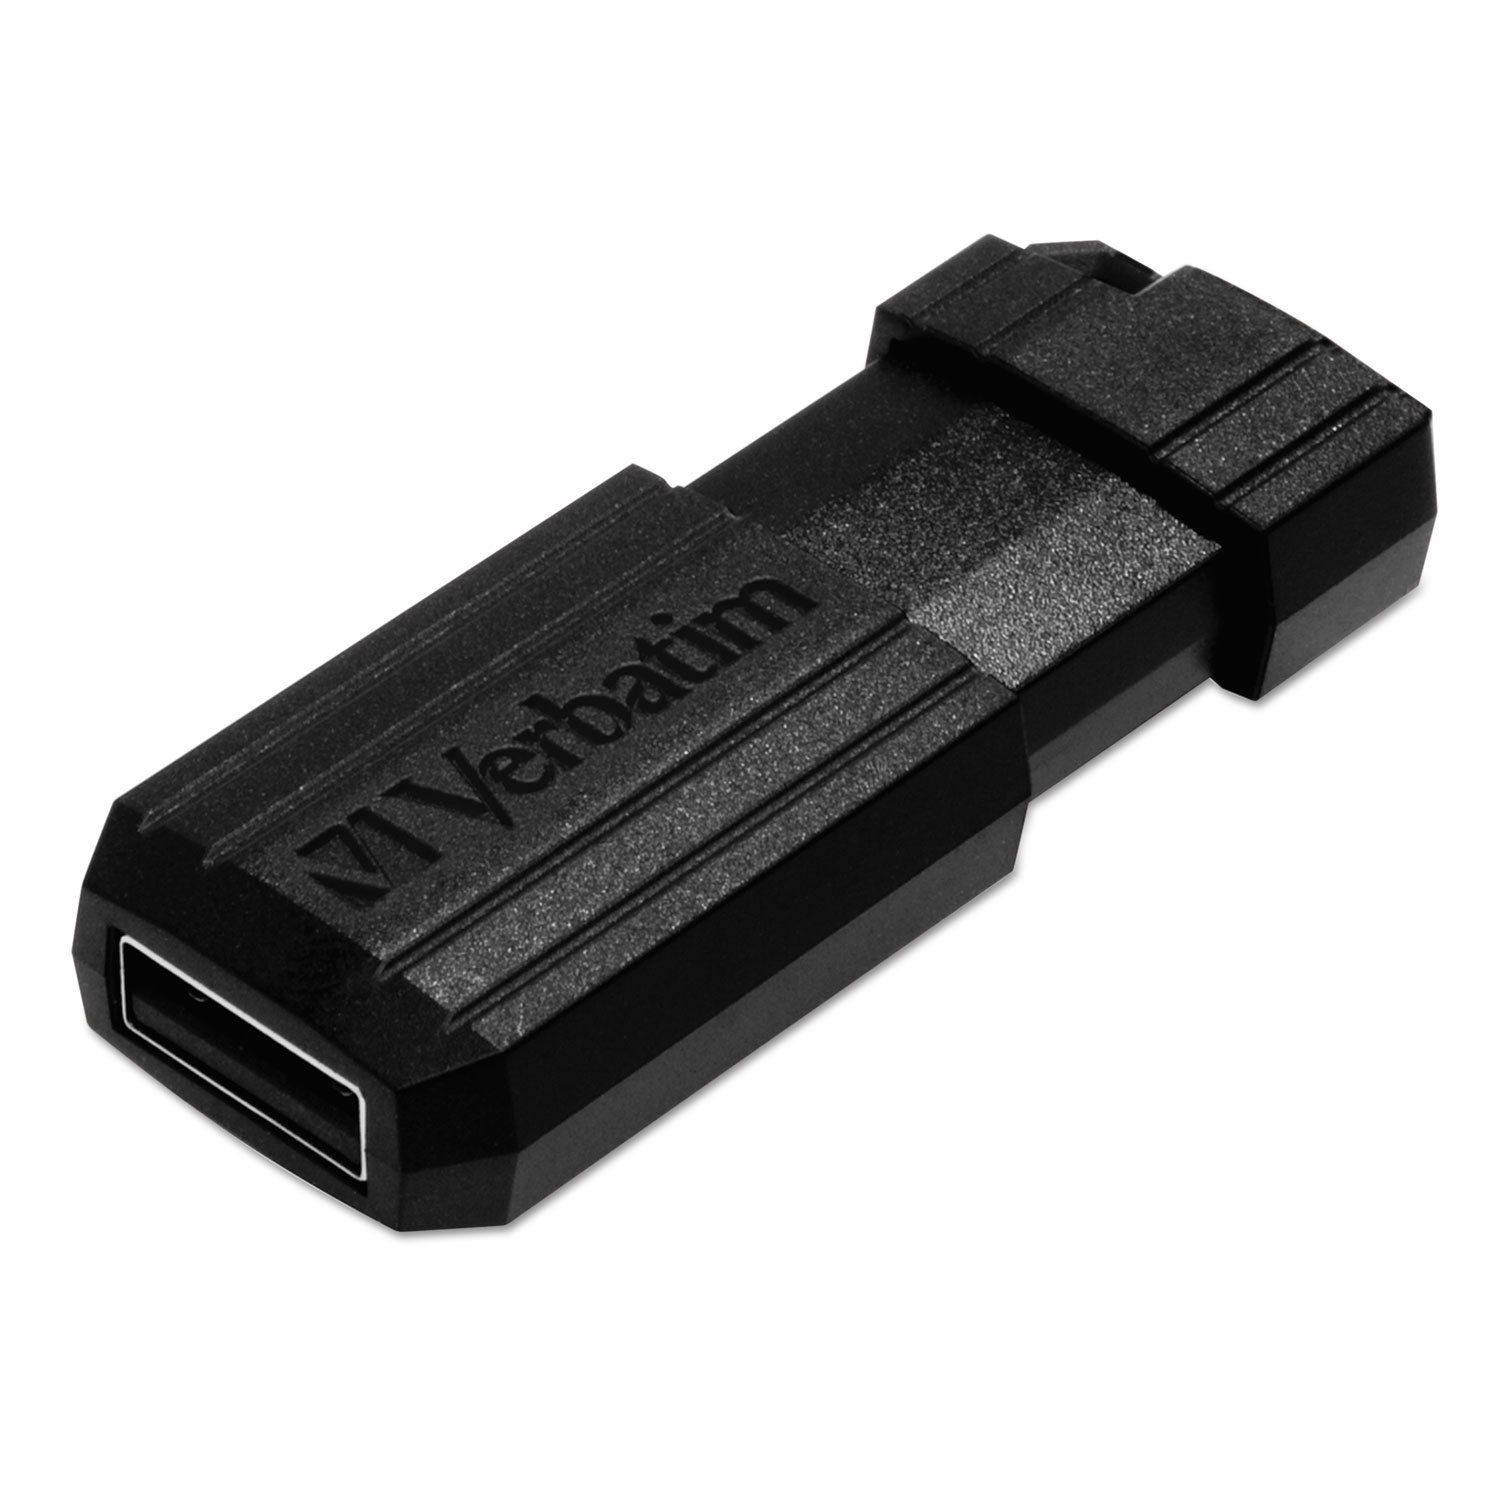 PinStripe USB Flash Drive, 64GB, Black